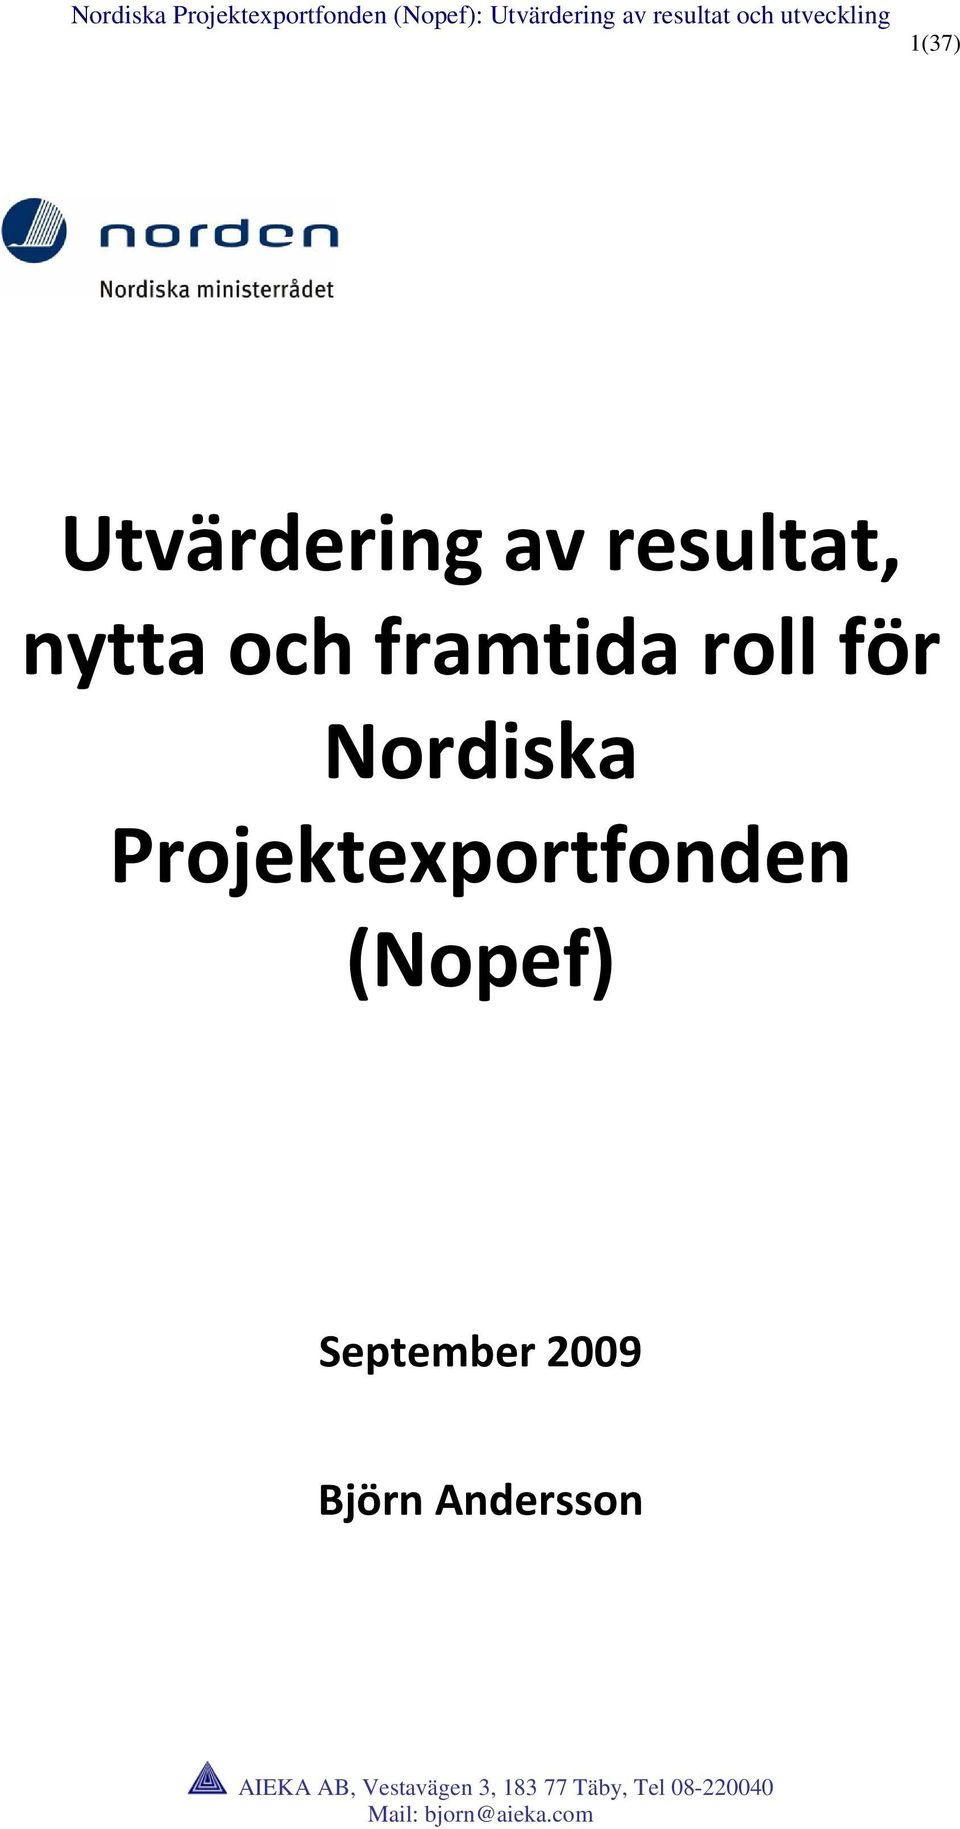 Nordiska Projektexportfonden